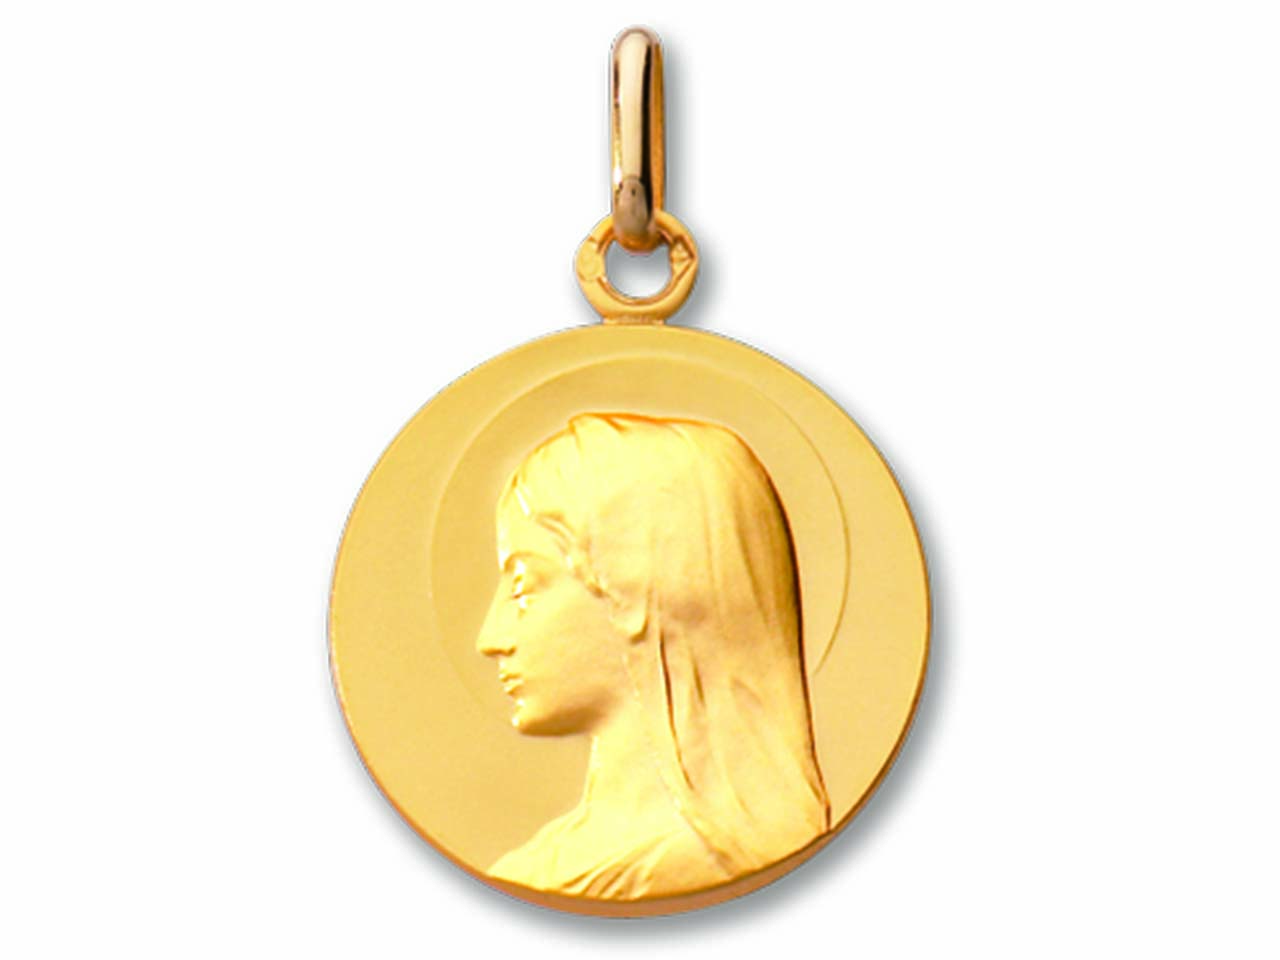 Acheter de l'Or et de l'Argent en France au Meilleur Prix. Investir en toute sécurité. https://goldsilverfranceparis.com/